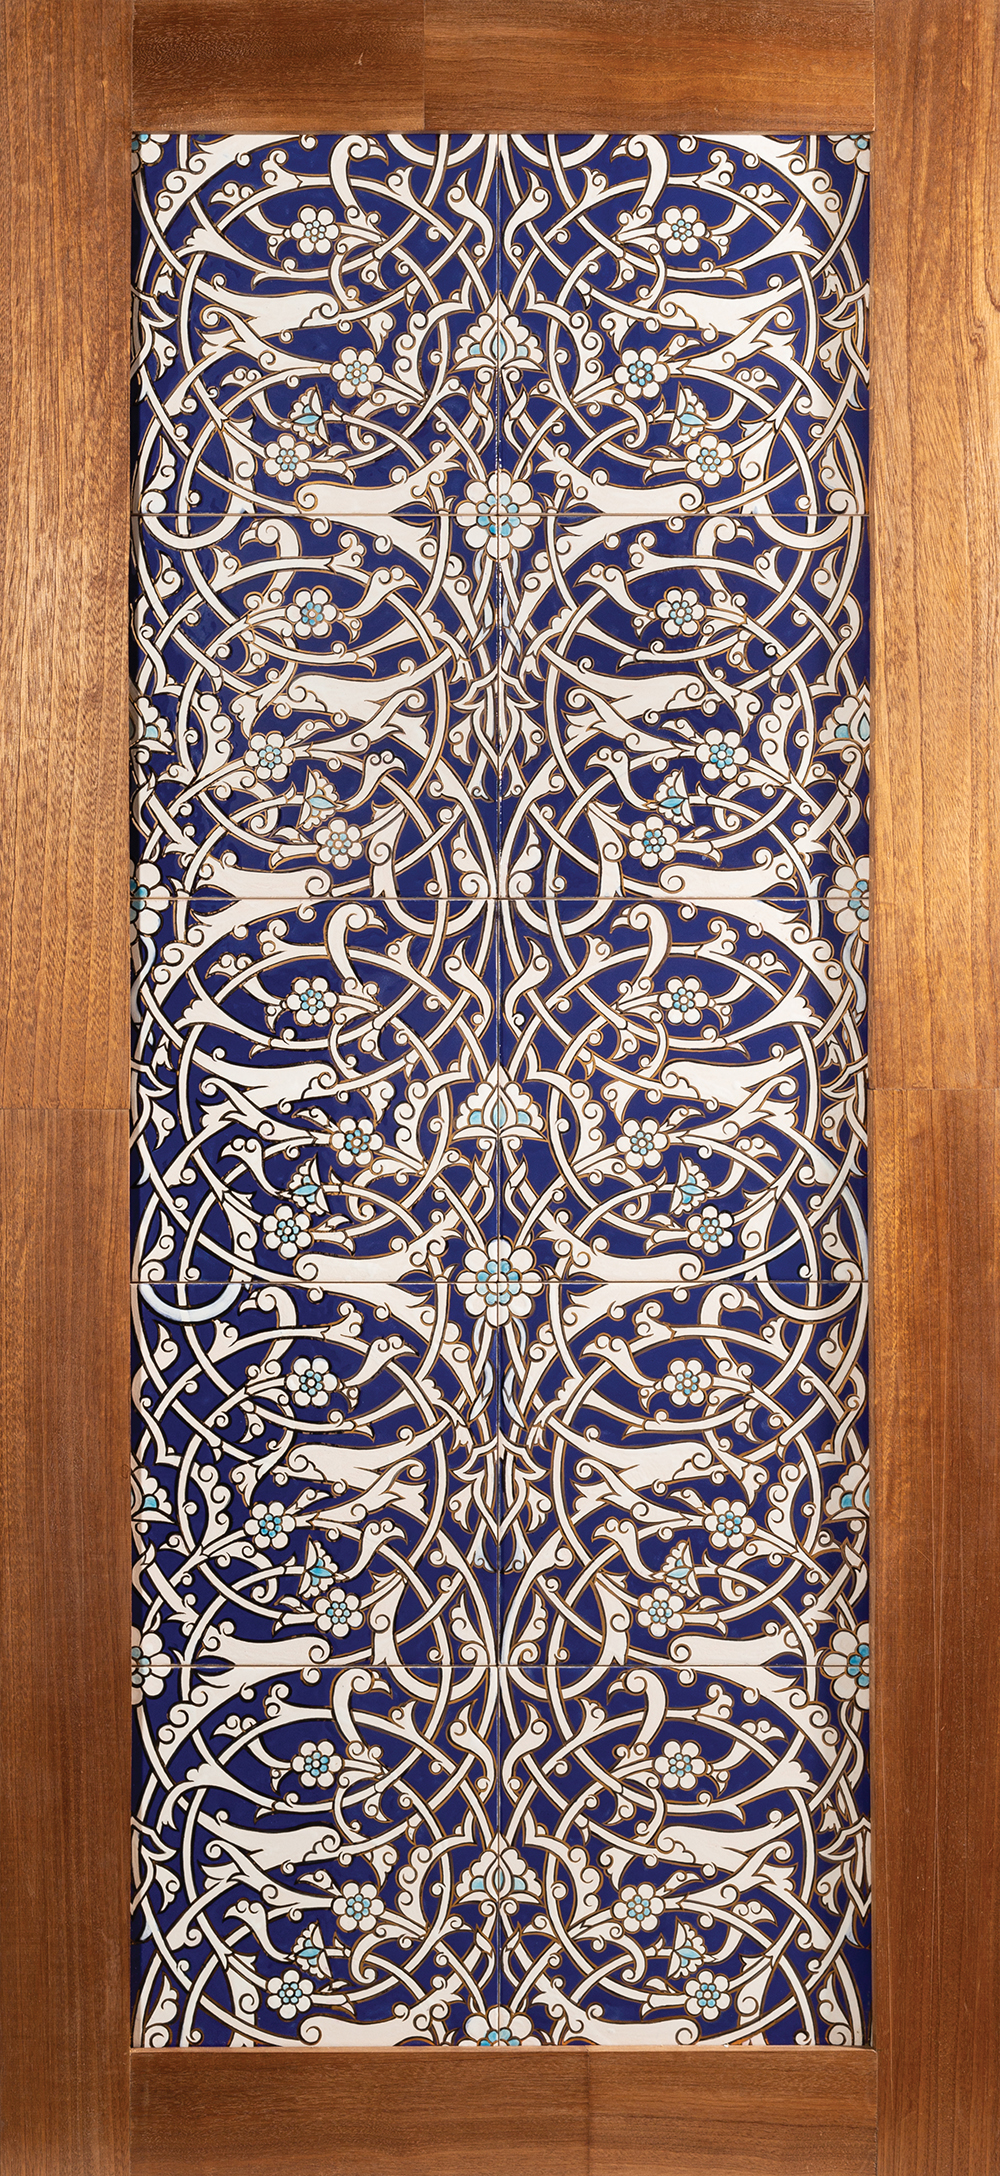 Restoration of Ceramic Tiles from Amir Tura Madrasah